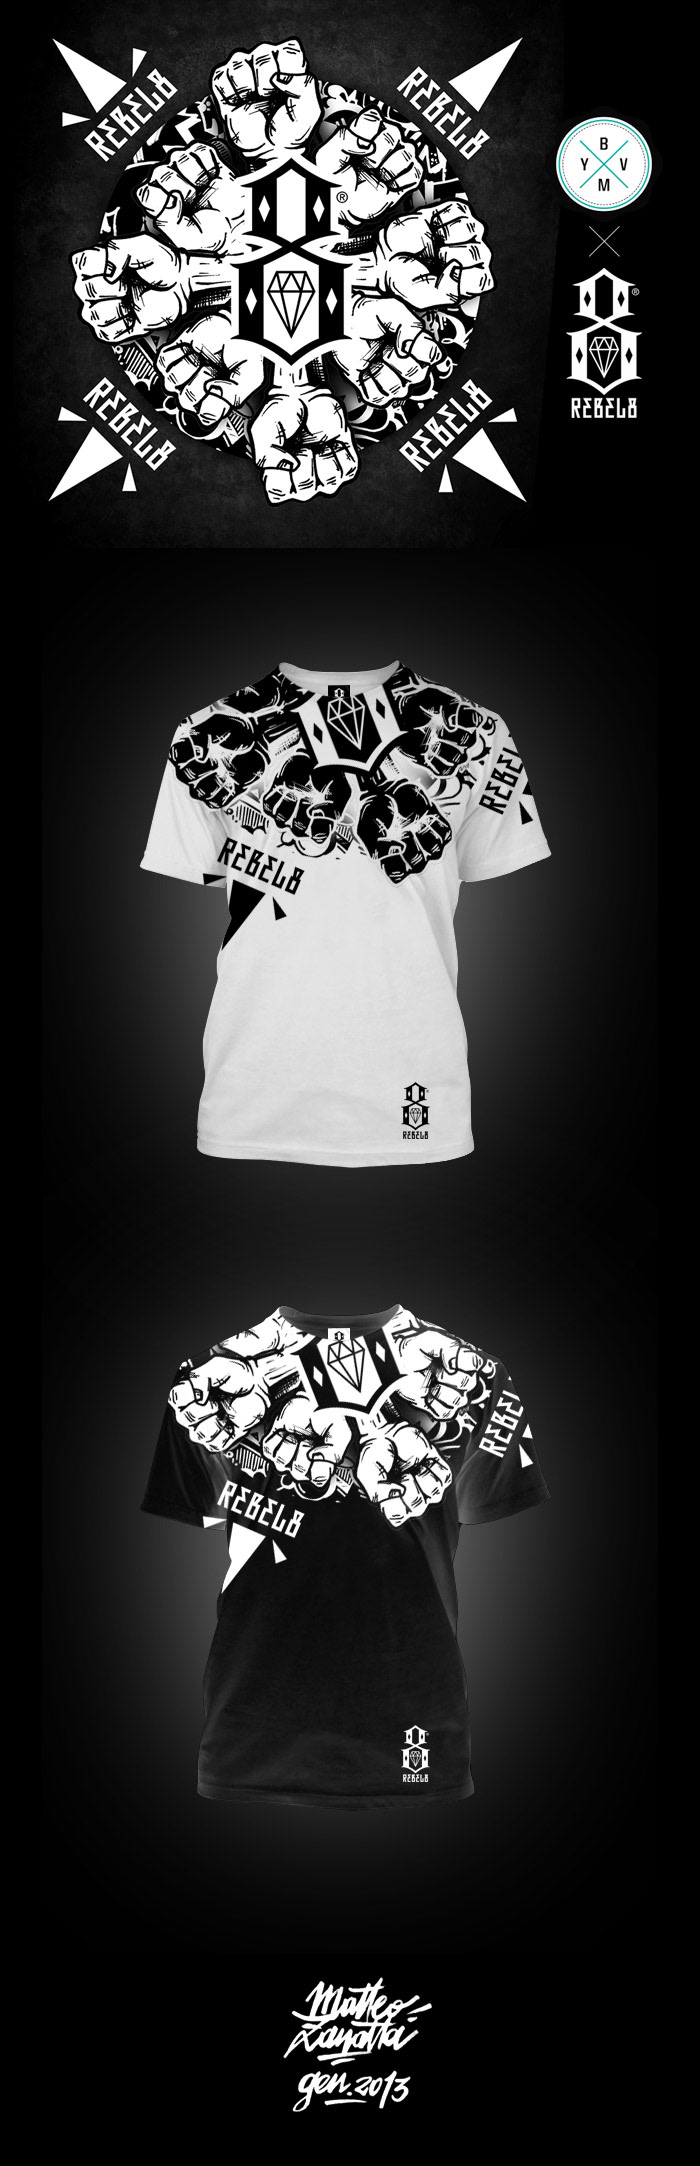 matteo zanatta milano rebel 8 Clothing streetwear illustrazione Rebel Fist design artwork